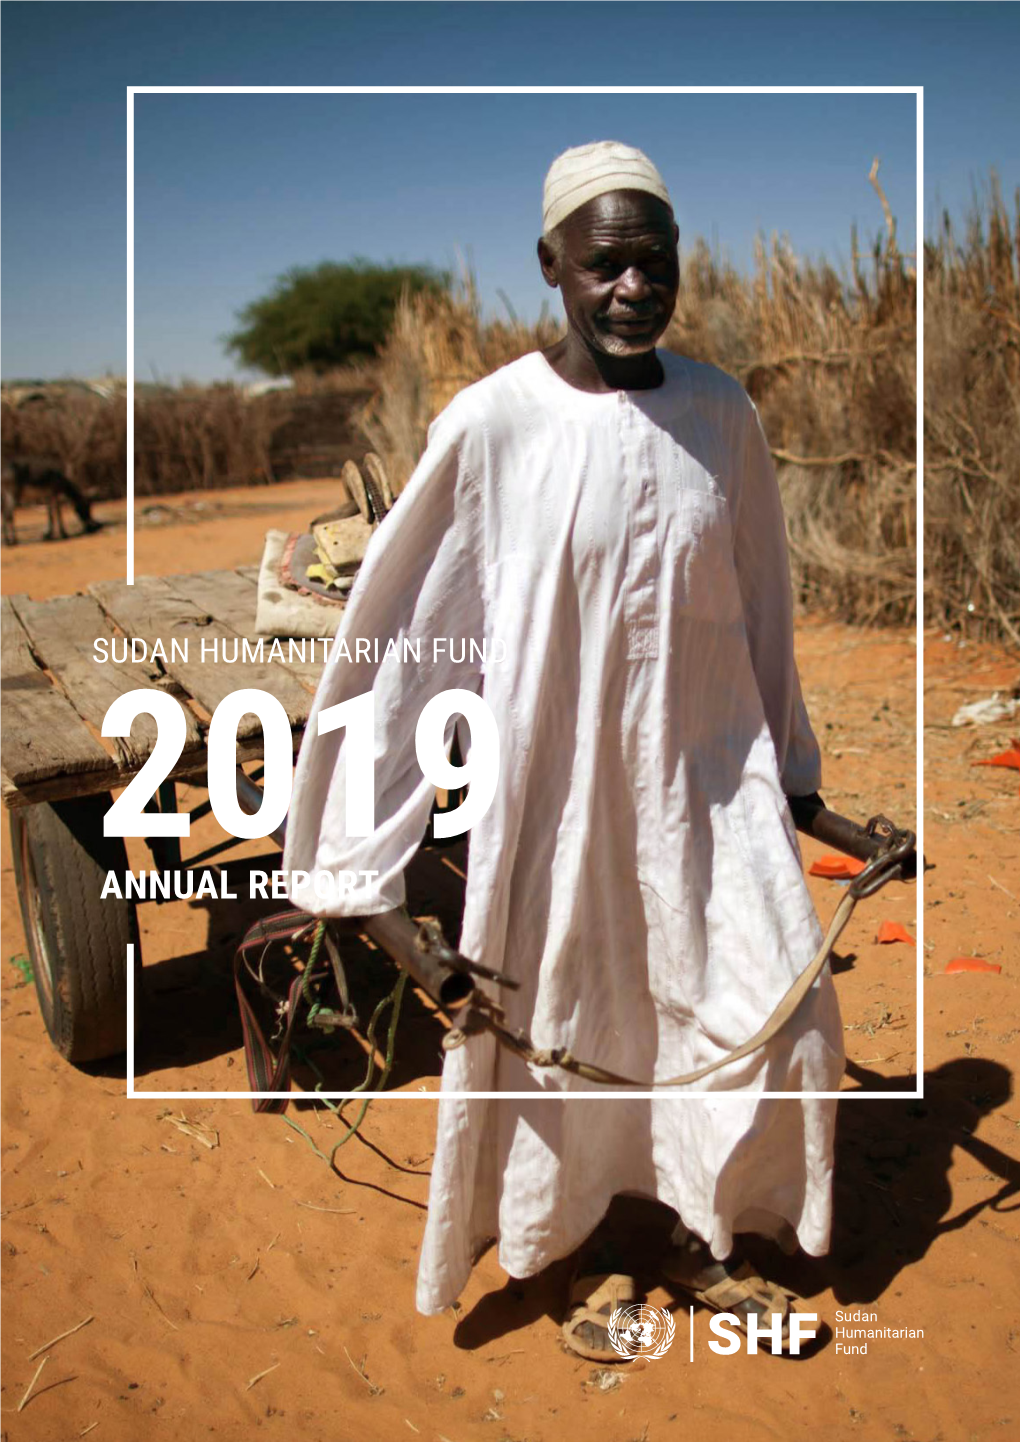 Sudan Humanitarian Fund Annual Report 2019